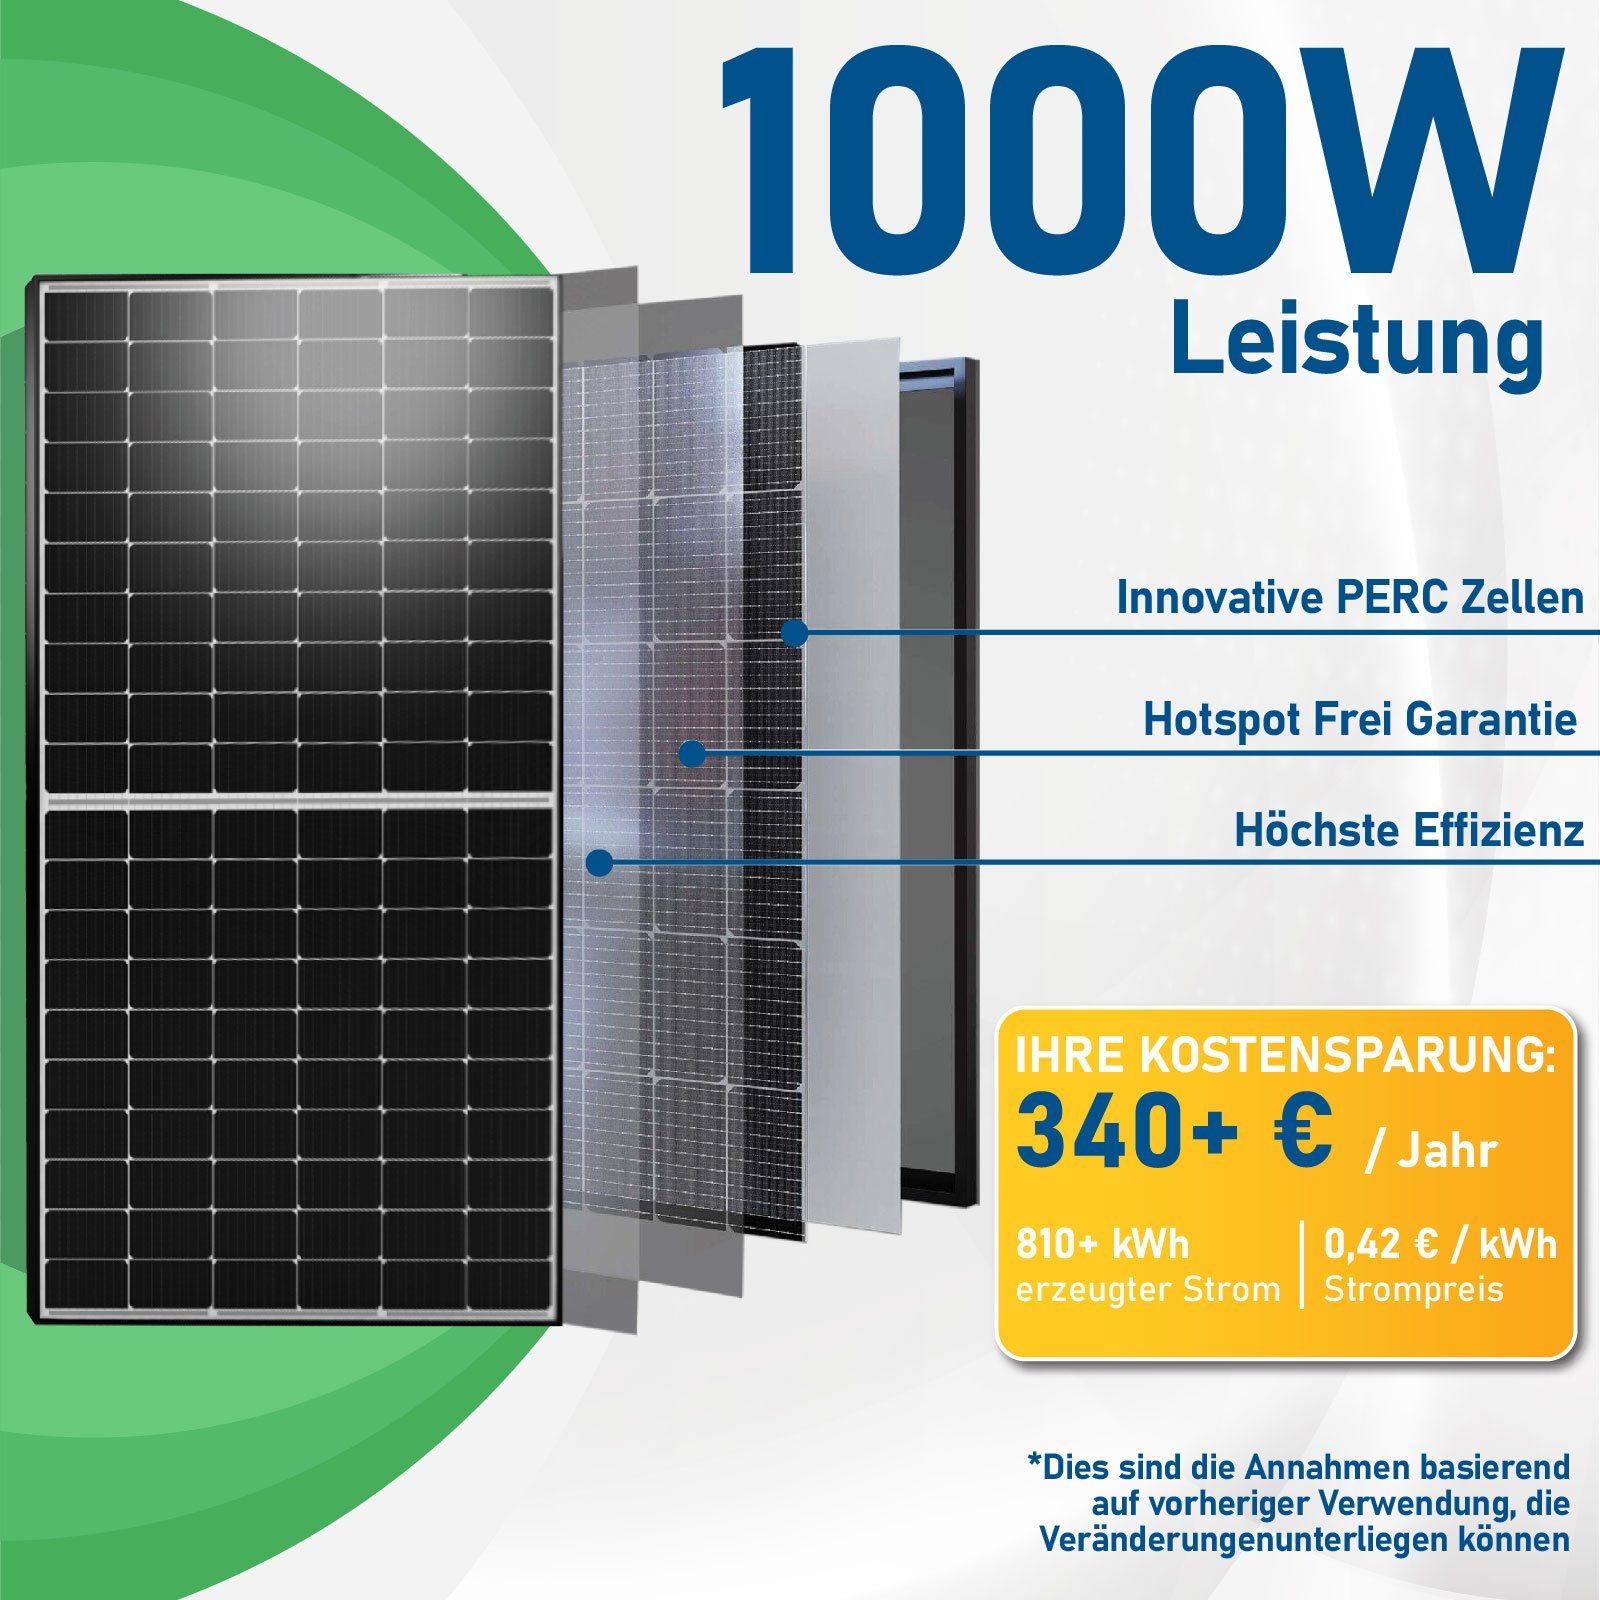 Neu Balkonkraftwerk PV-Montage WIFI Solaranlage Deye Campergold Wechselrichter Relais 1000W mit Generation Eckig, Balkongeländer 800W Komplettset